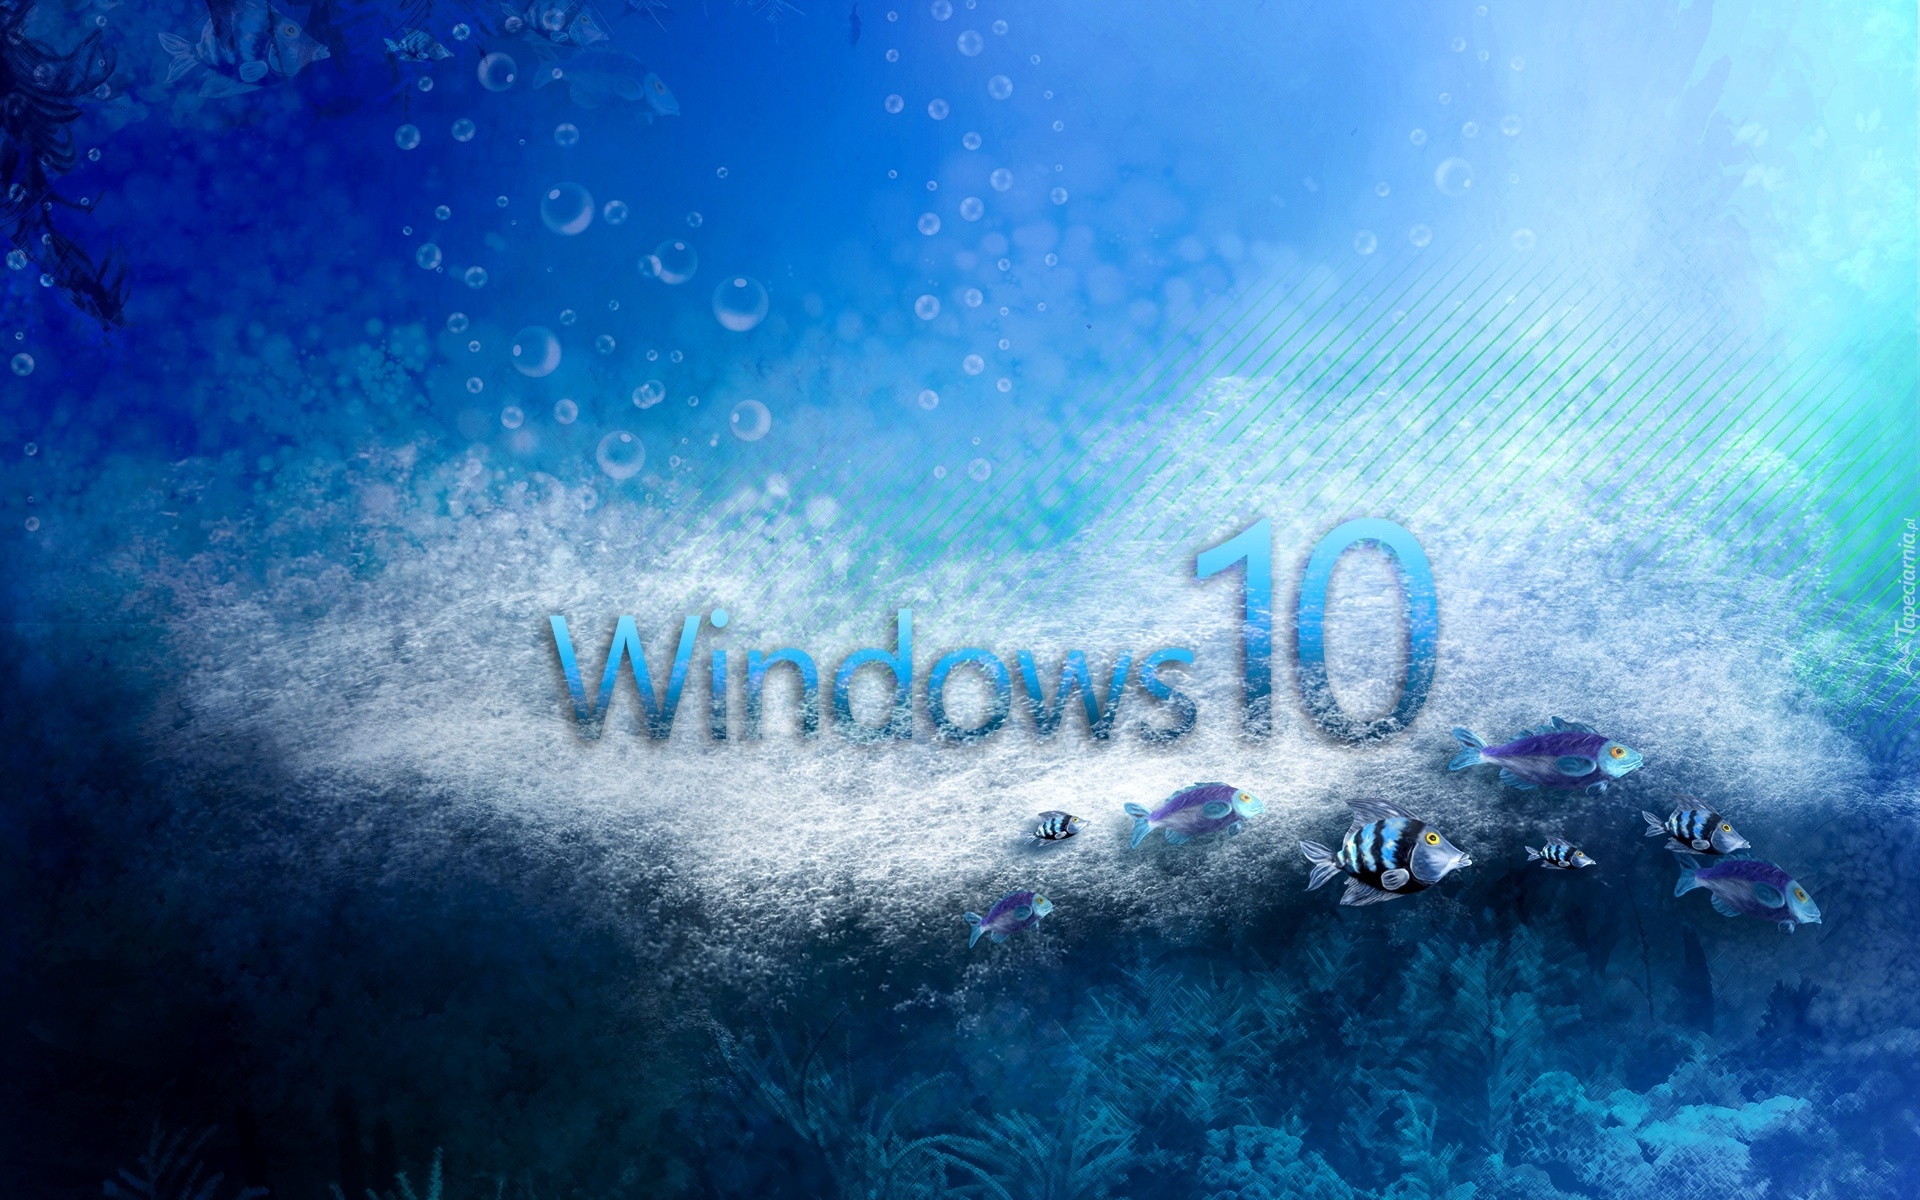 Windows 10, Rybki, Woda